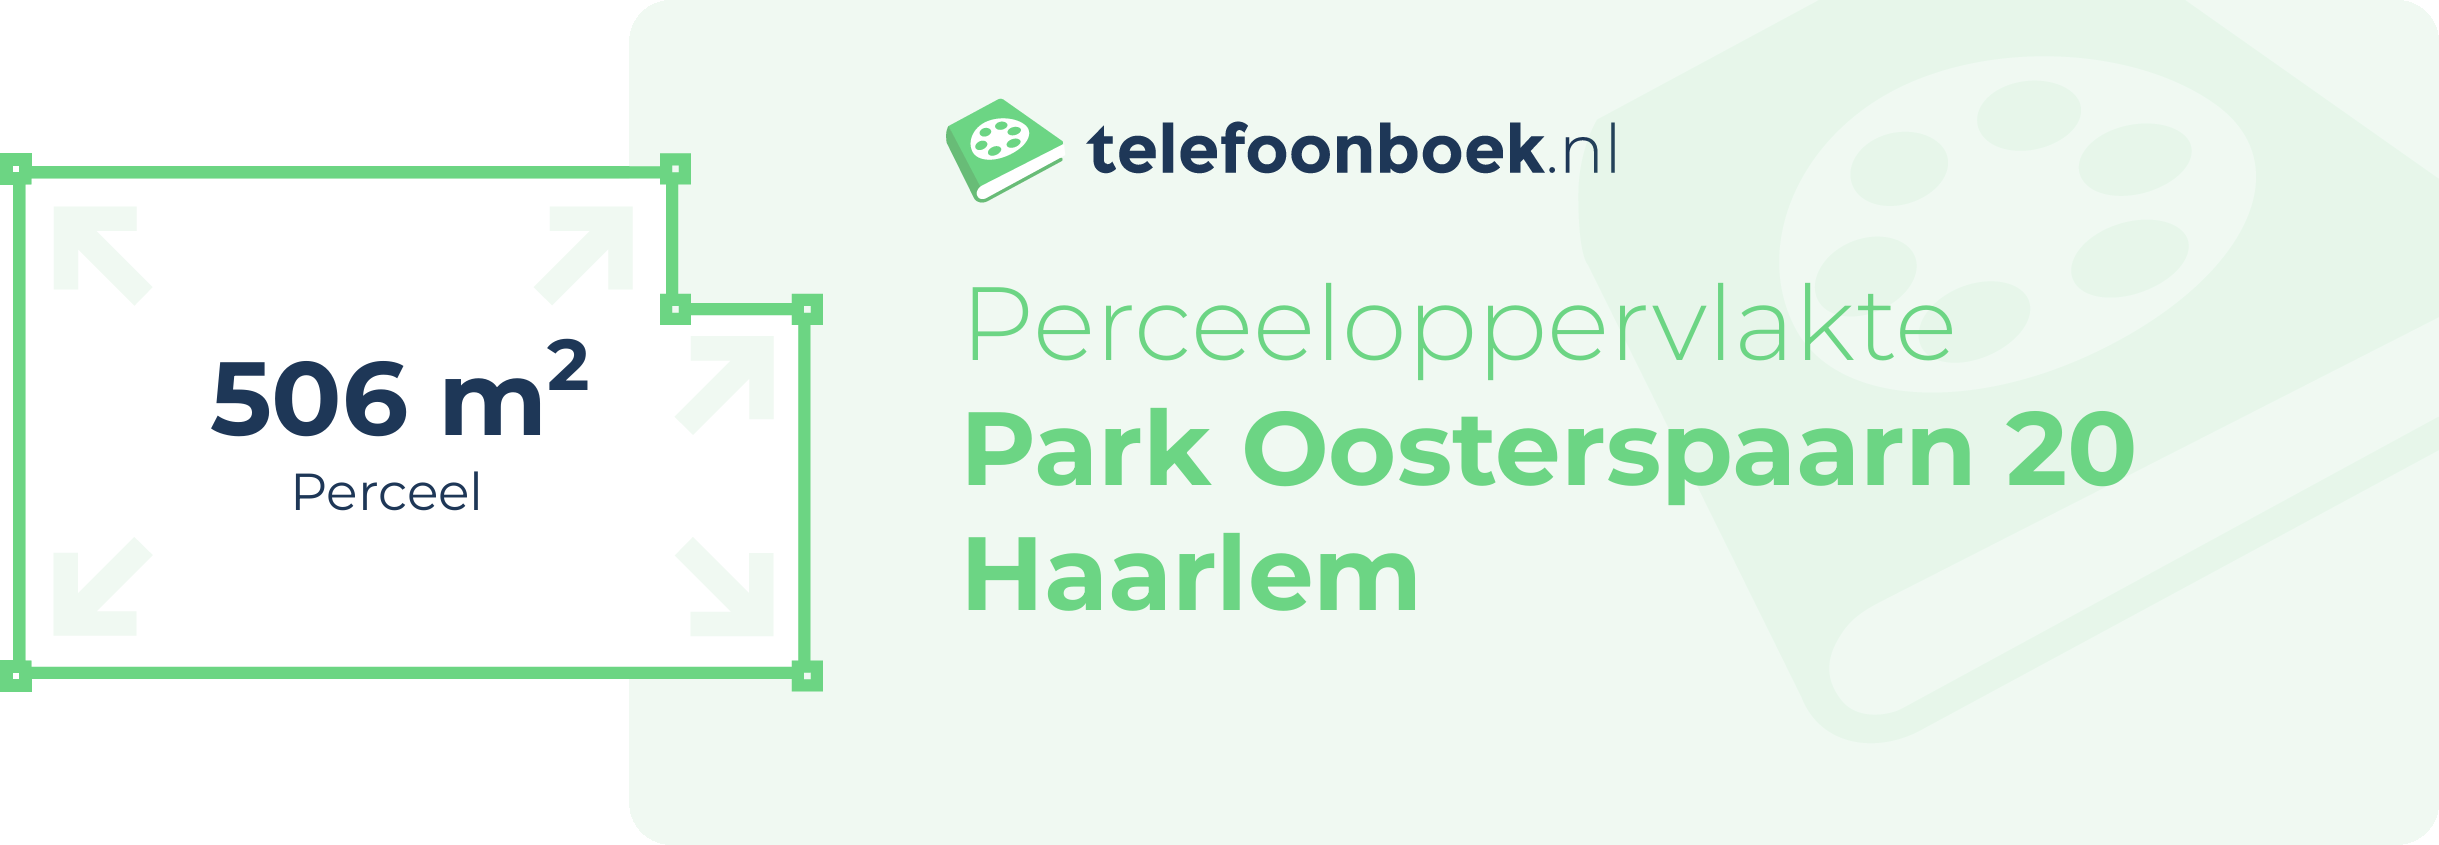 Perceeloppervlakte Park Oosterspaarn 20 Haarlem